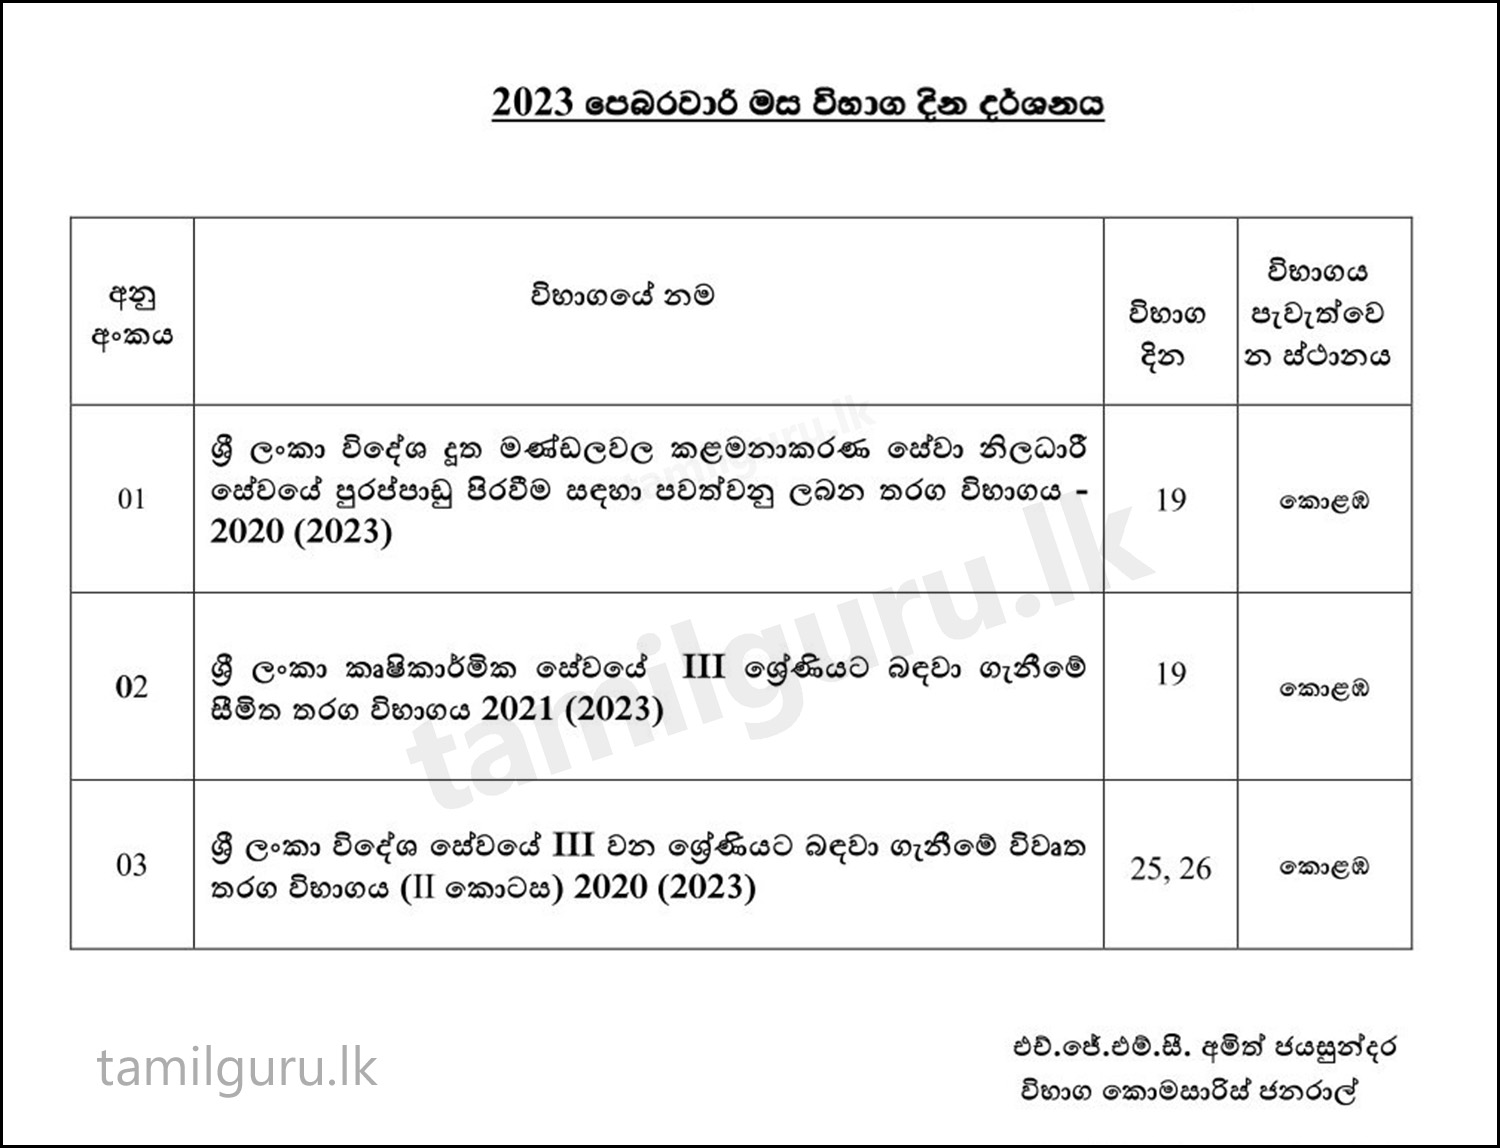 Exam Calendar for February 2023 - Department of Examinations